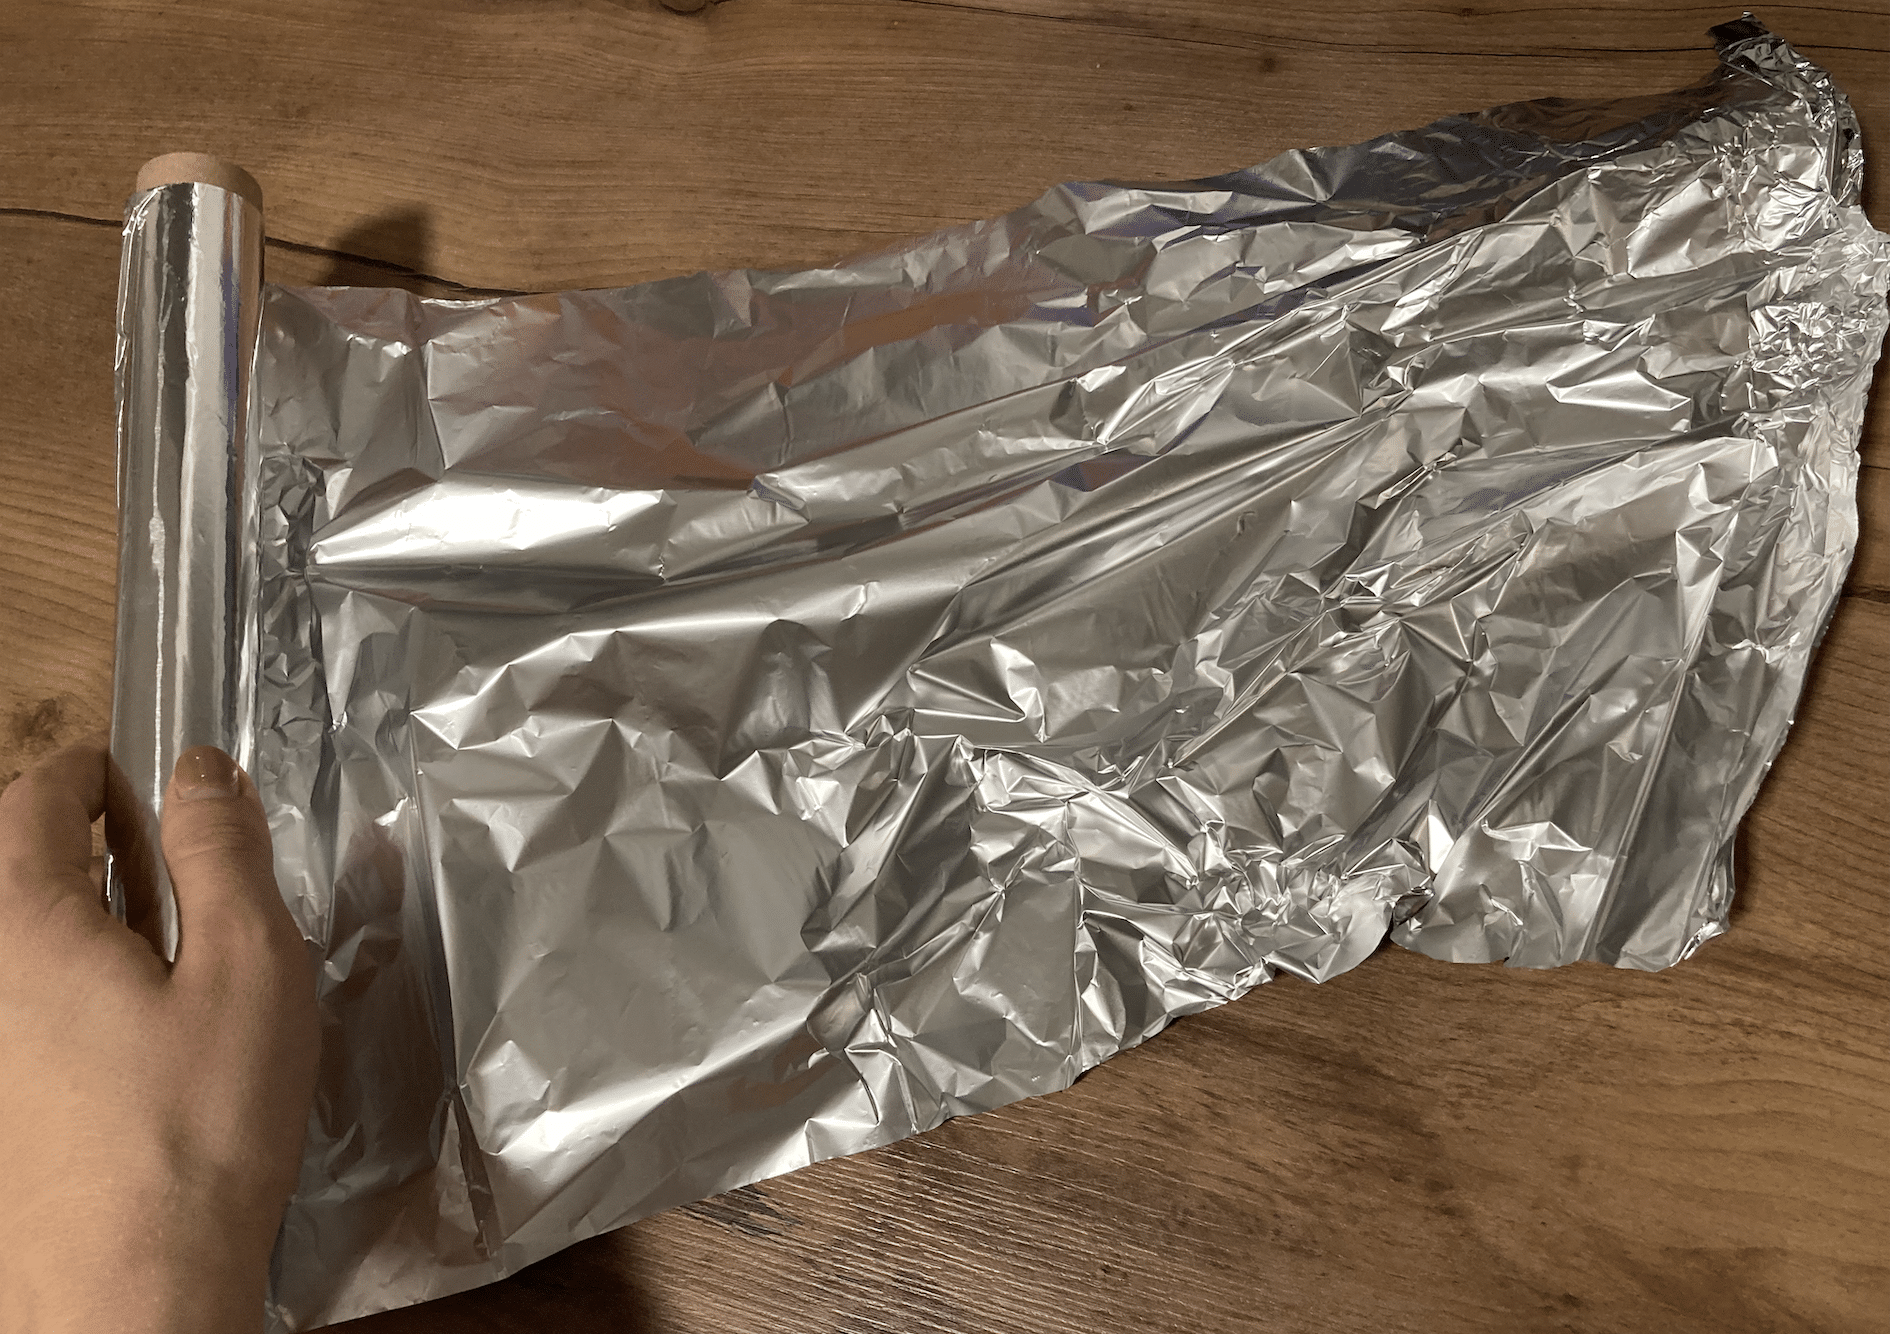 Al hornear, ¿se envuelve la CARNE en el lado brillante u oscuro del papel de aluminio? ¡Una DIFERENCIA importante que absolutamente todo el mundo debería conocer!